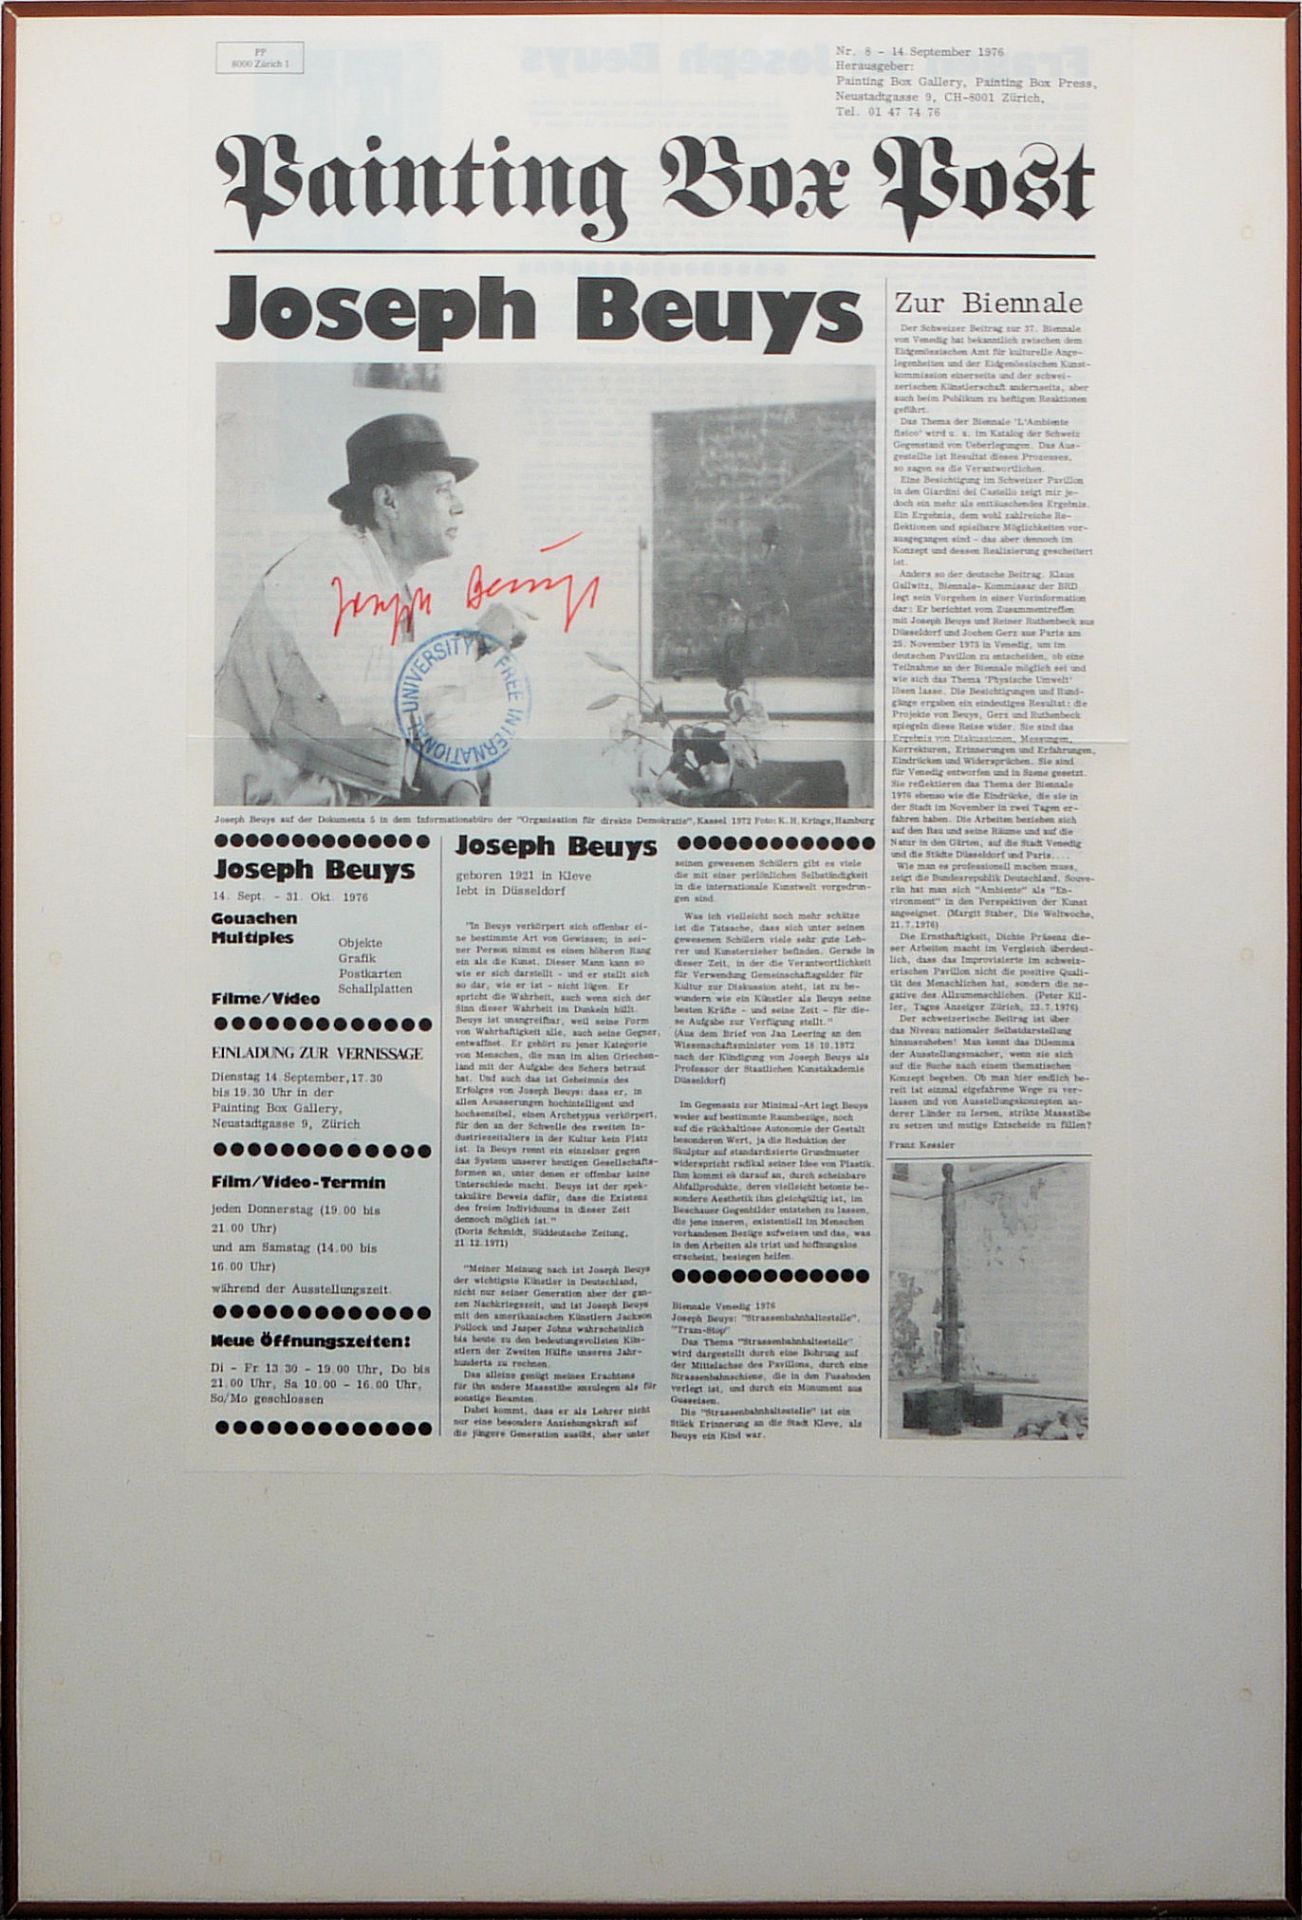 Joseph Beuys, Painting Box Post, Offset von 1976, signiert und gestempelt